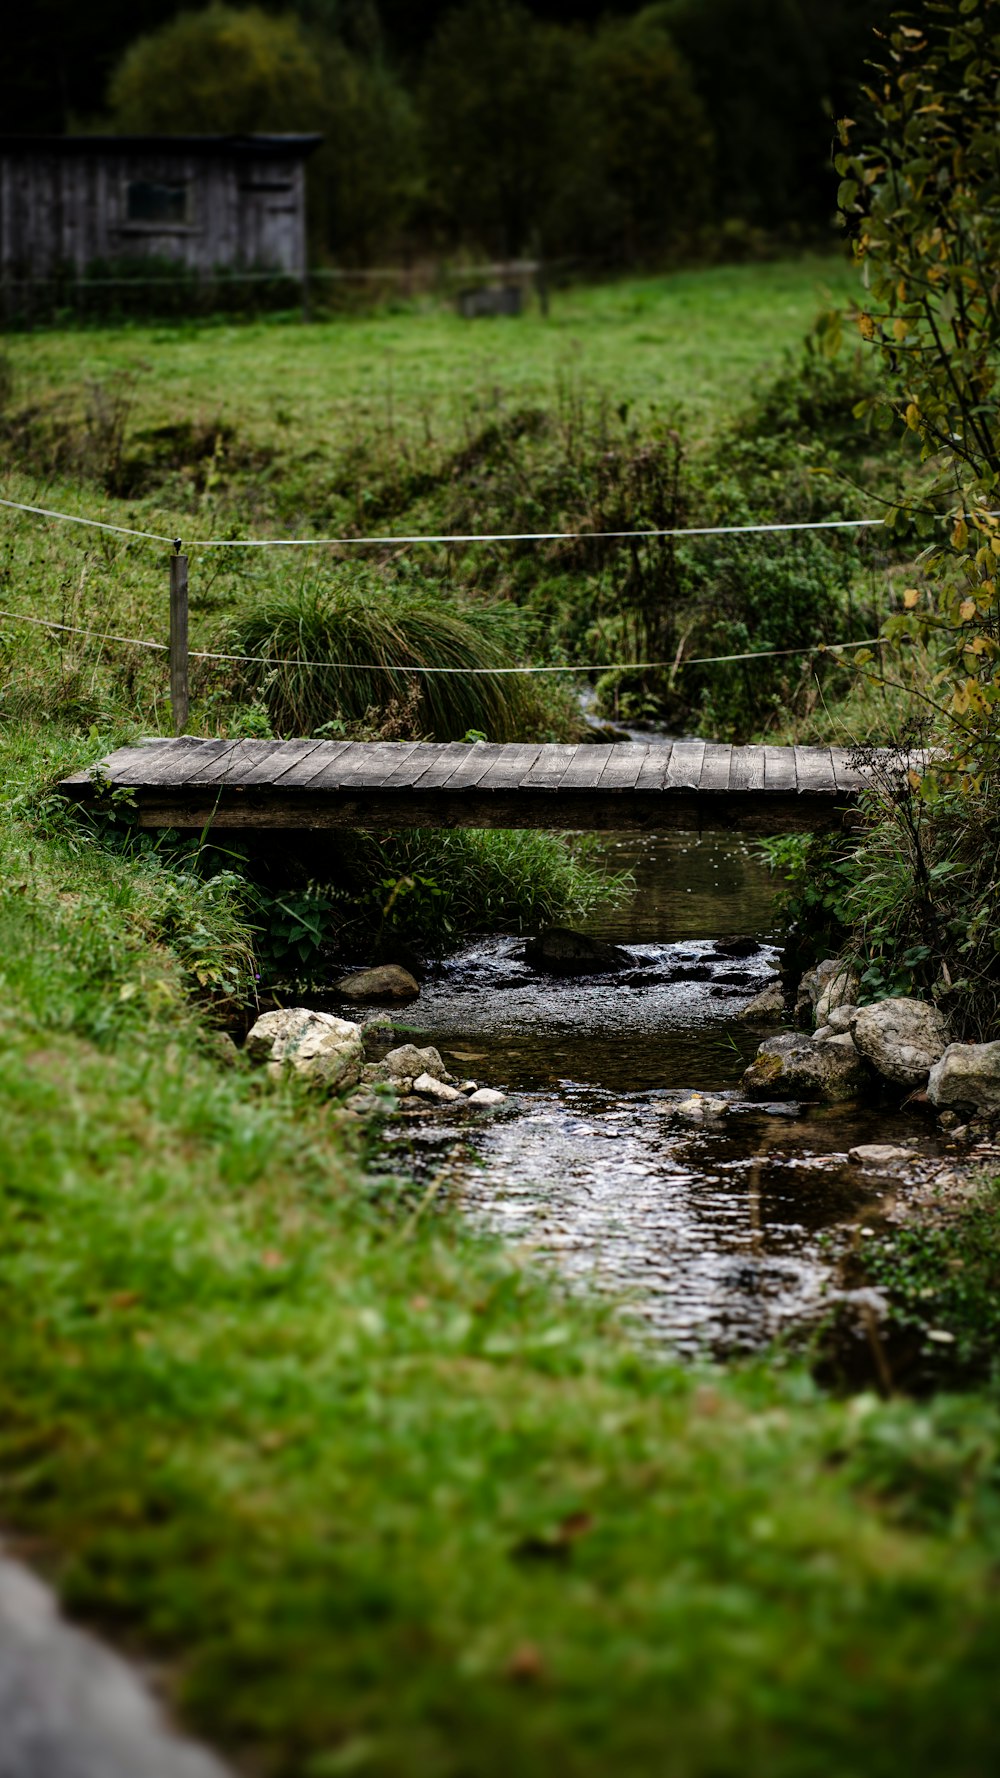 a small wooden bridge over a small stream